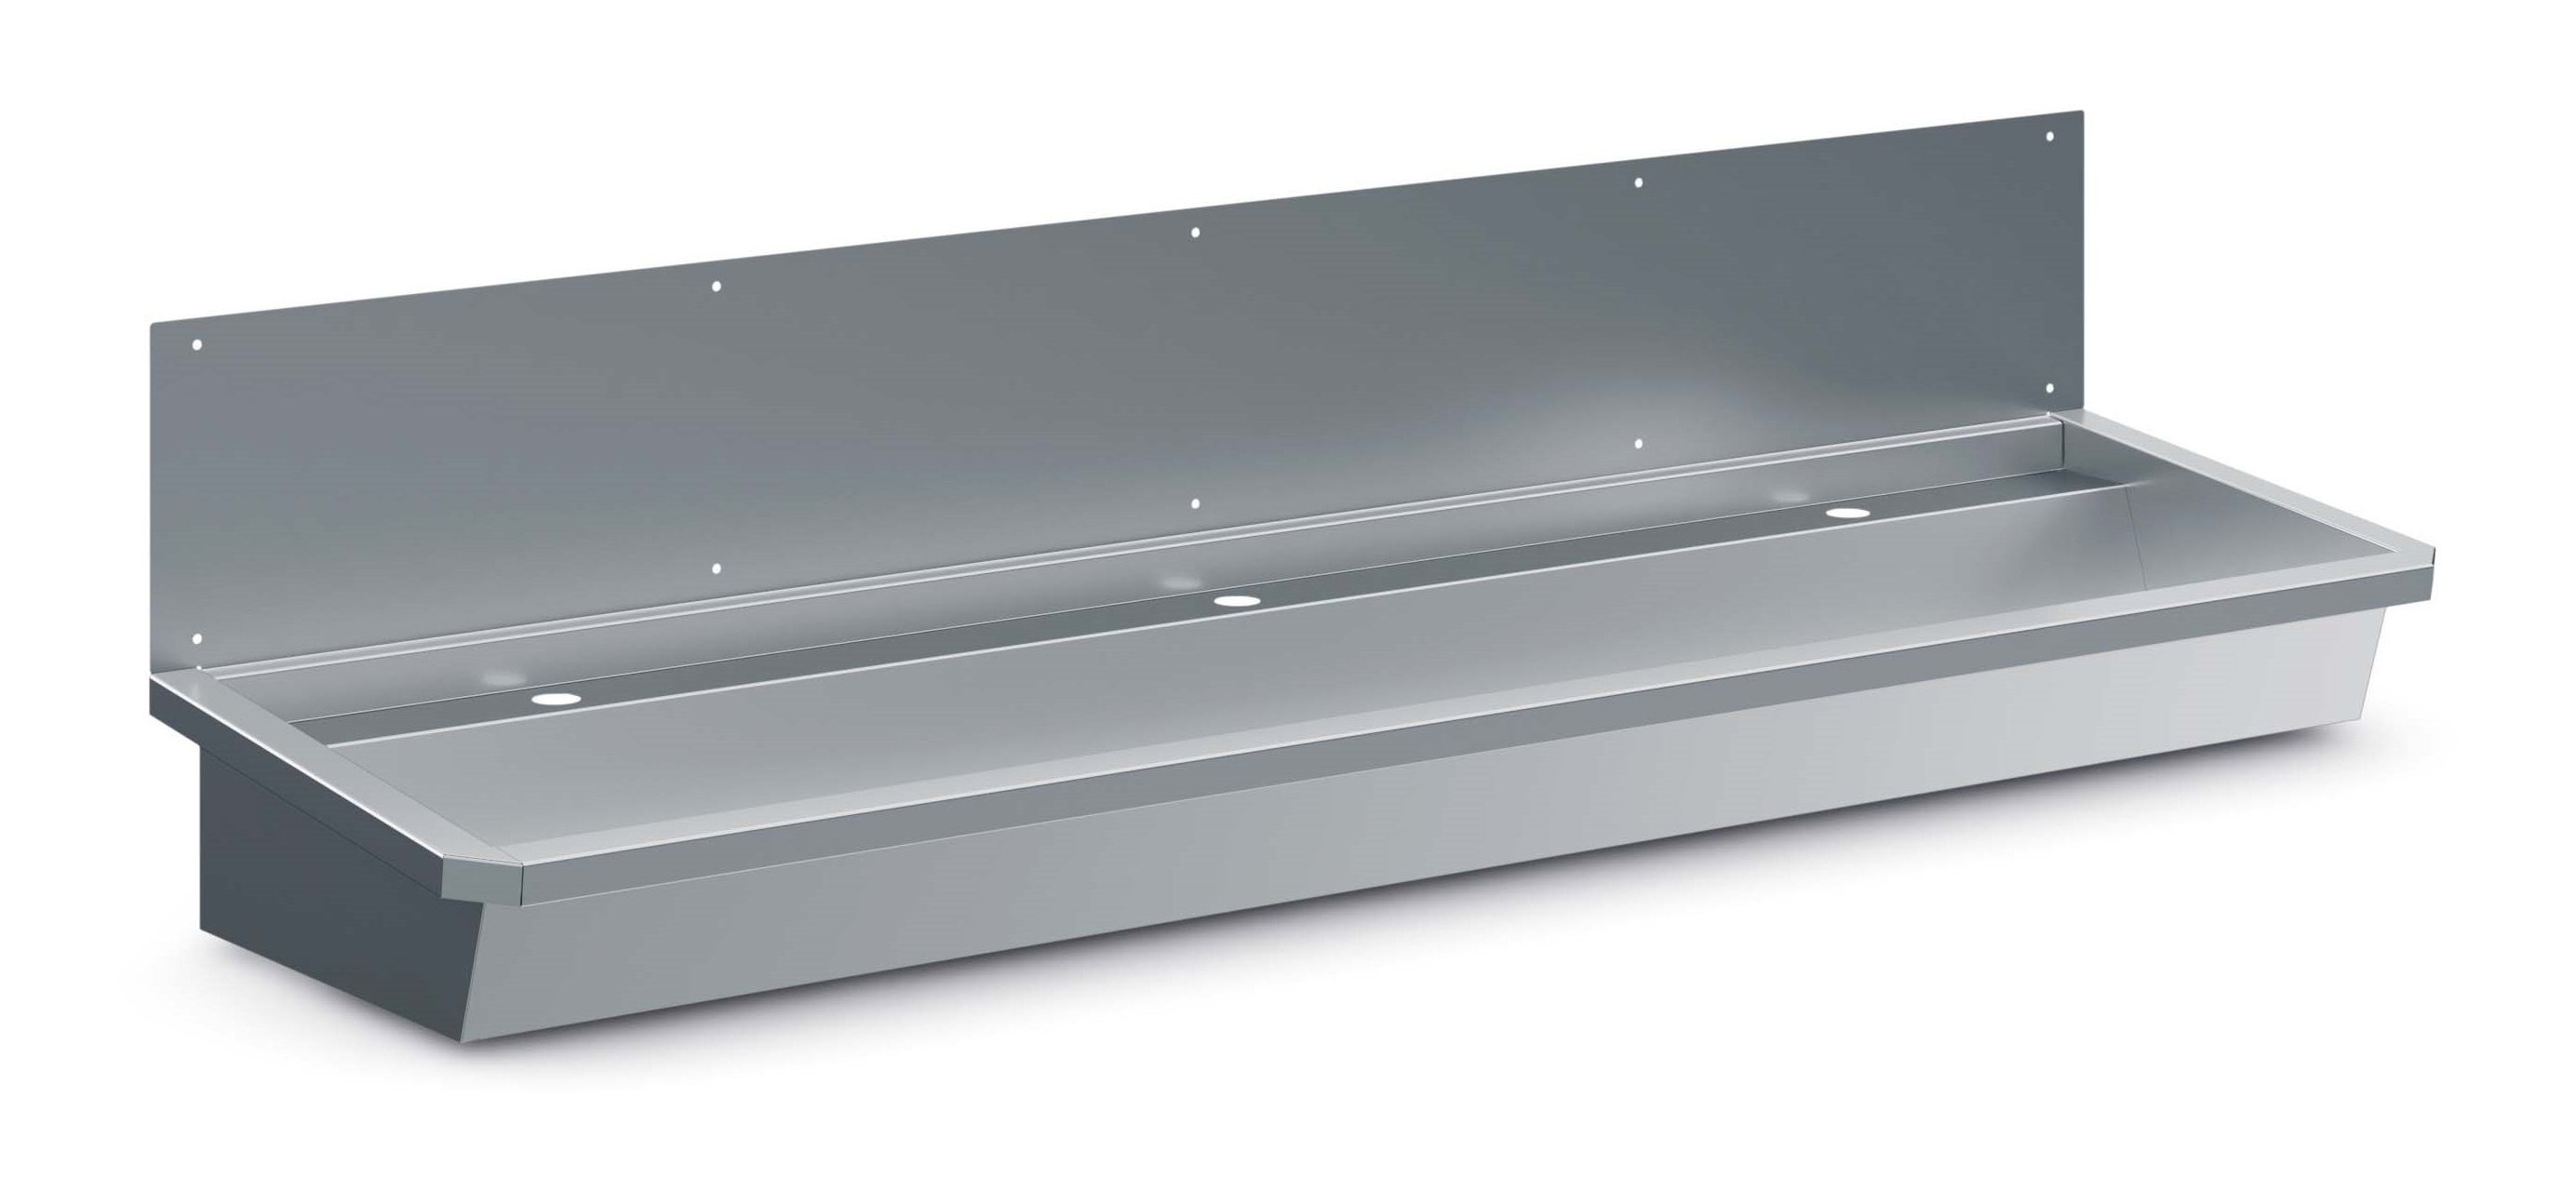 Évier en acier inoxydable avec écran anti-éclaboussures - 1800x468x (h) 438mm